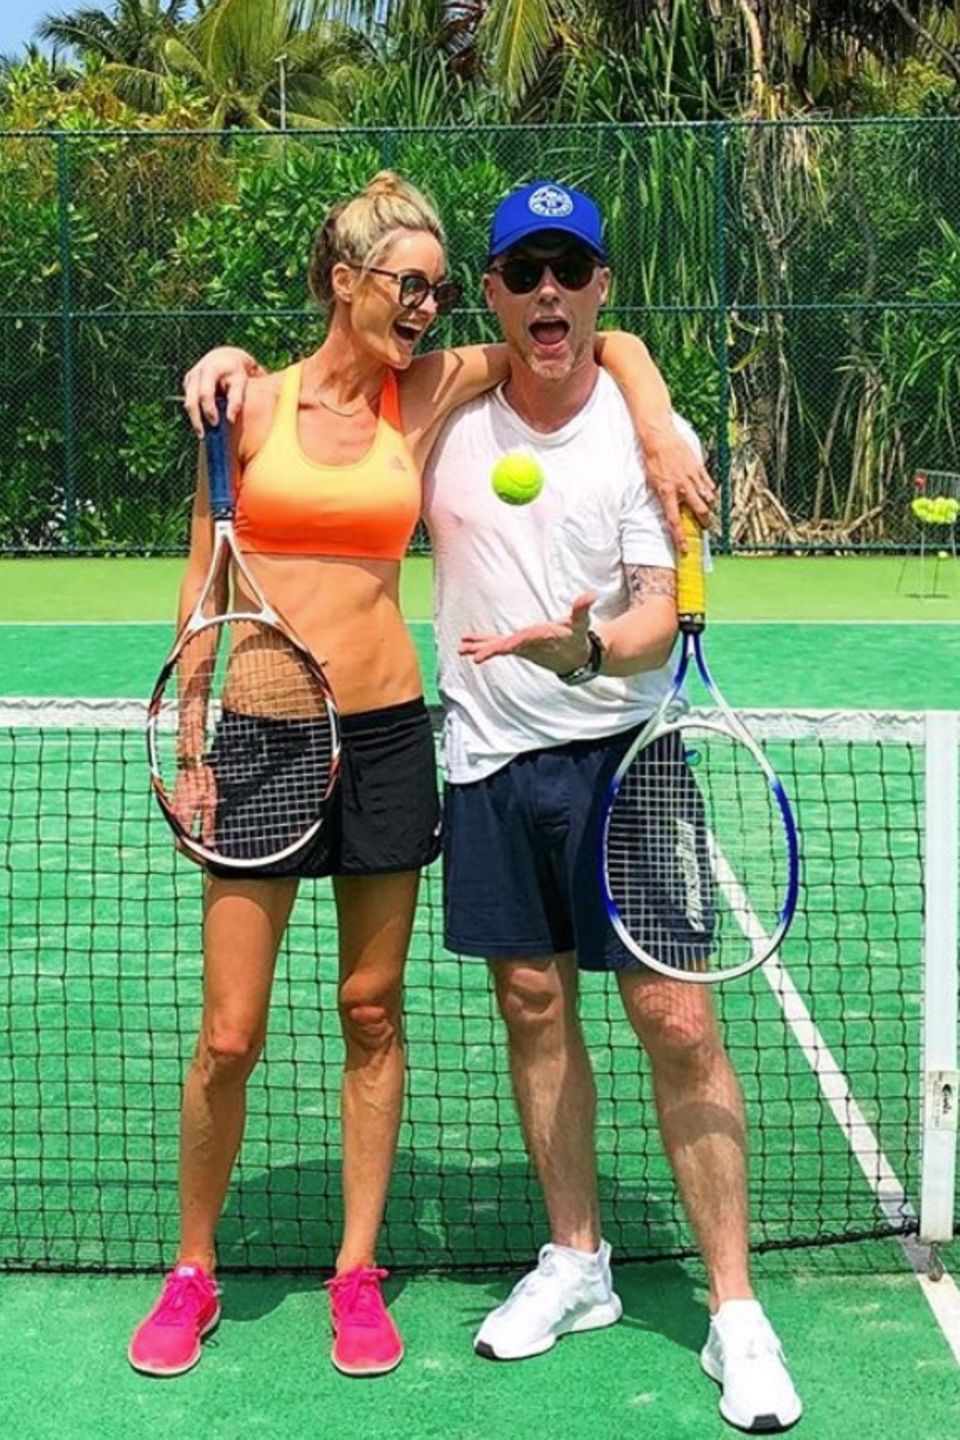 Storm und Ronan Keating sehen super fit aus. Wie sie das schaffen? Unter anderem mit spaßigen und schweißtreibenden Tennispartien.